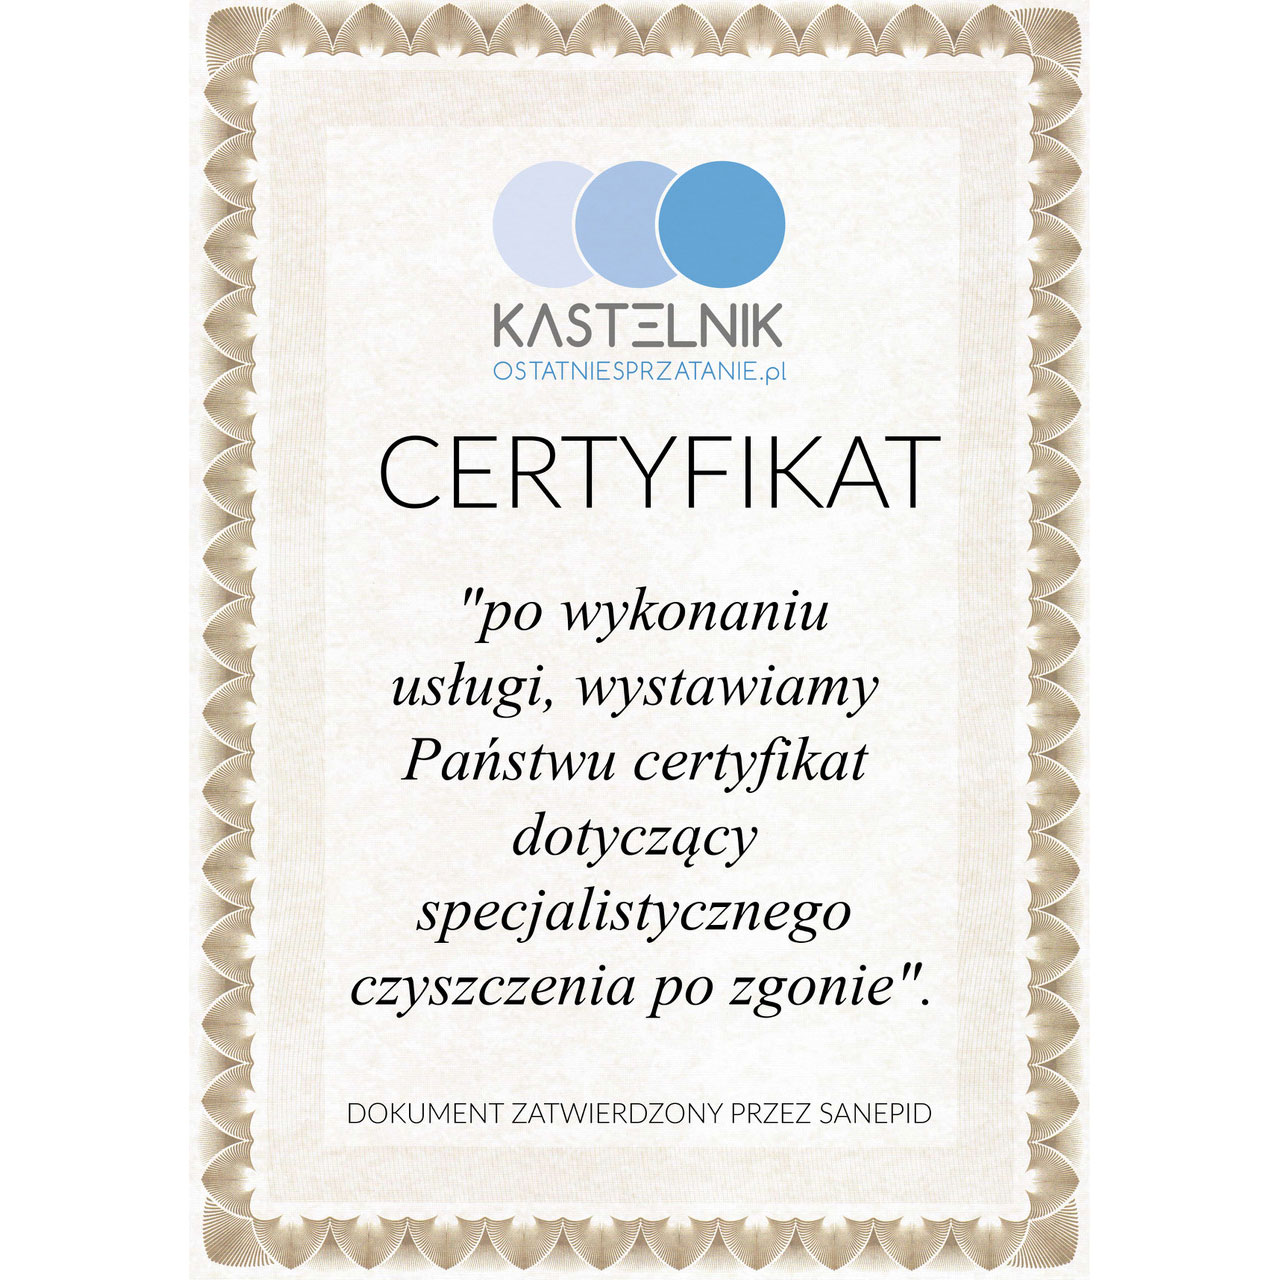 Certyfikat sprzątania po zmarłych w Lublinie